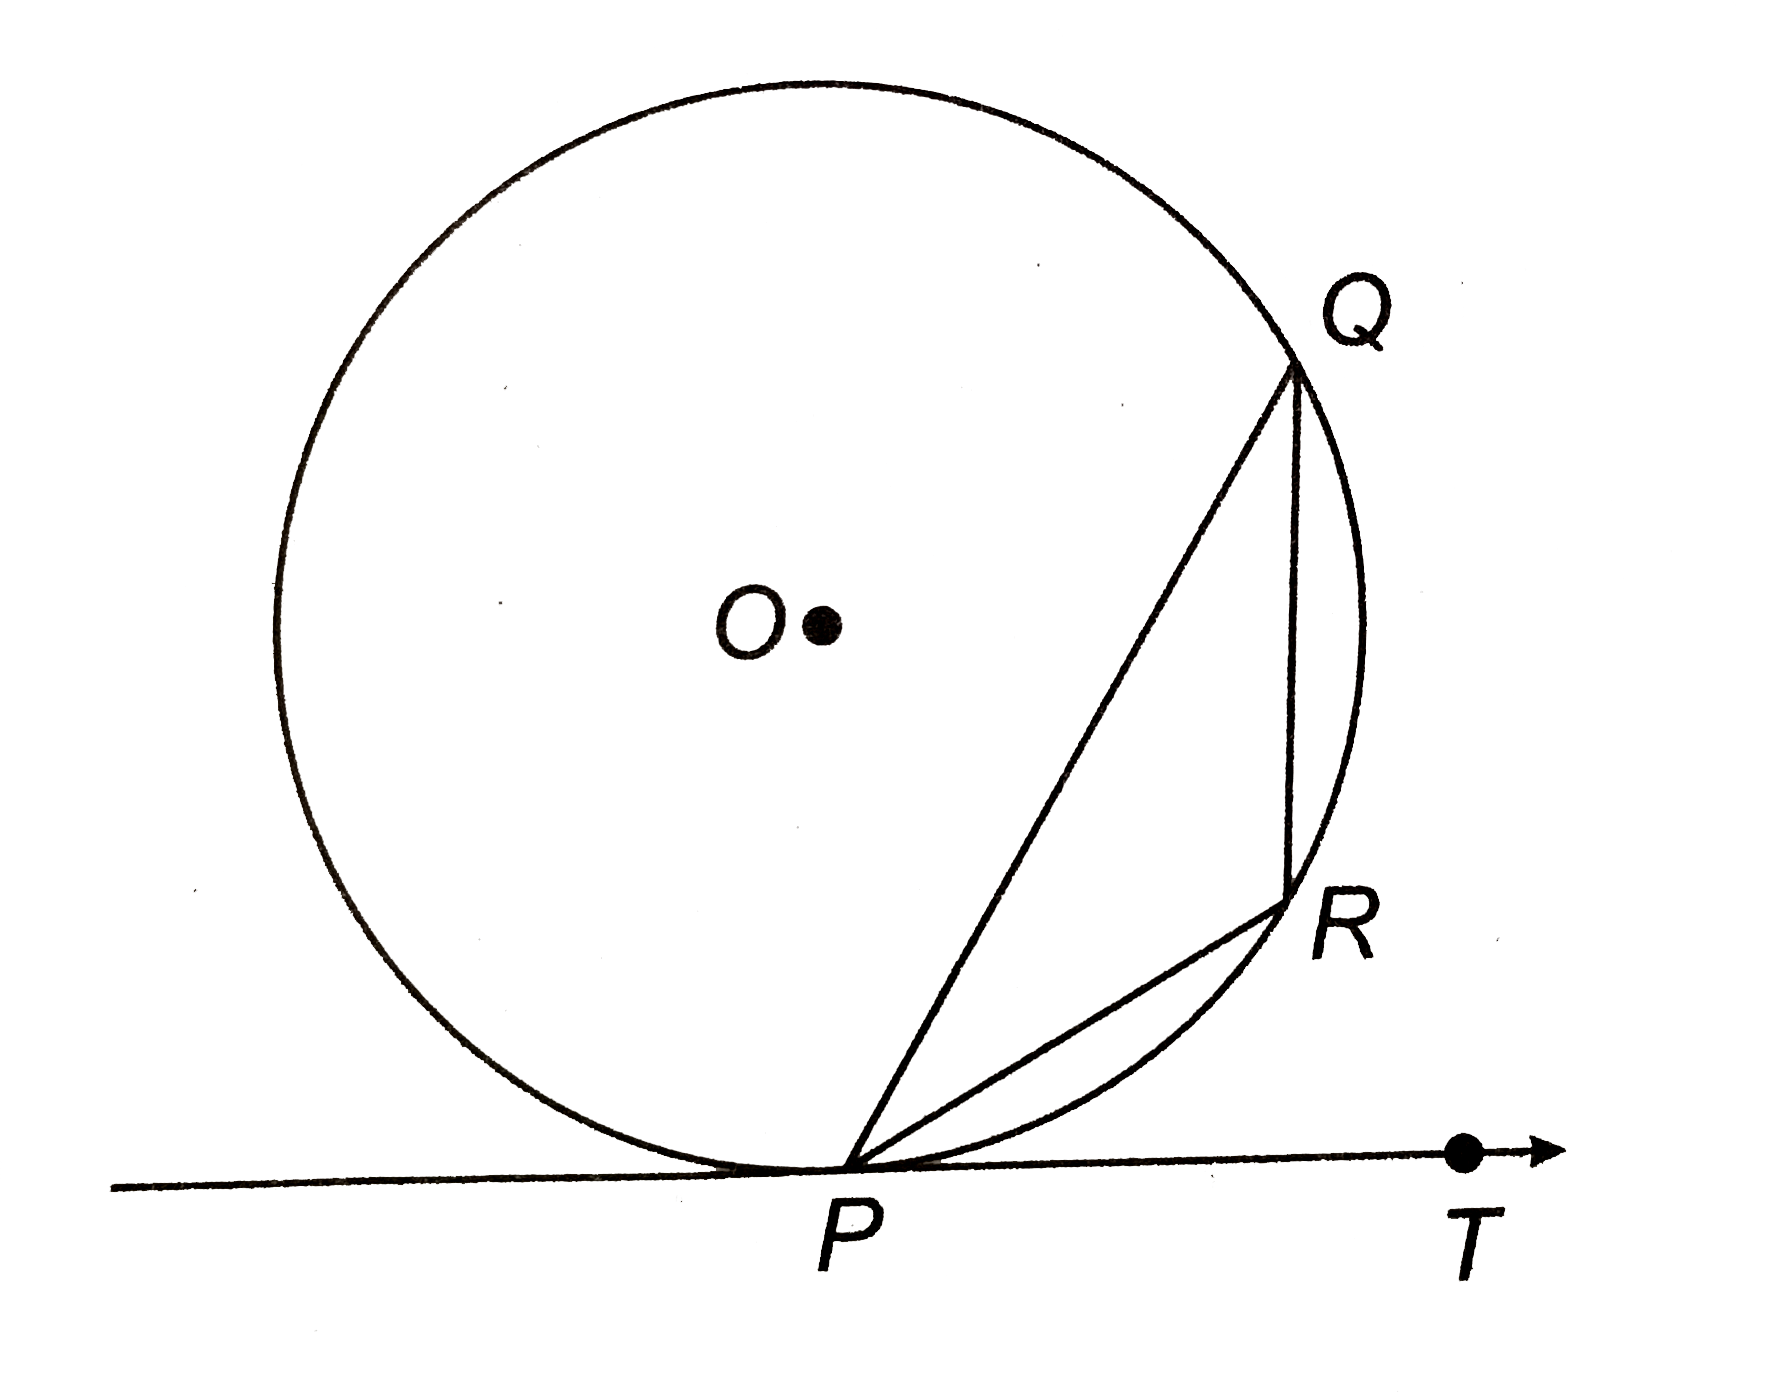 संलग्न चित्र में, PQ वृत्त की जीवा और PT बिन्दु P पर स्पर्श रेखा इस प्रकार है कि angleQPT=60^(@) है। anglePRQ ज्ञात कीजिए।